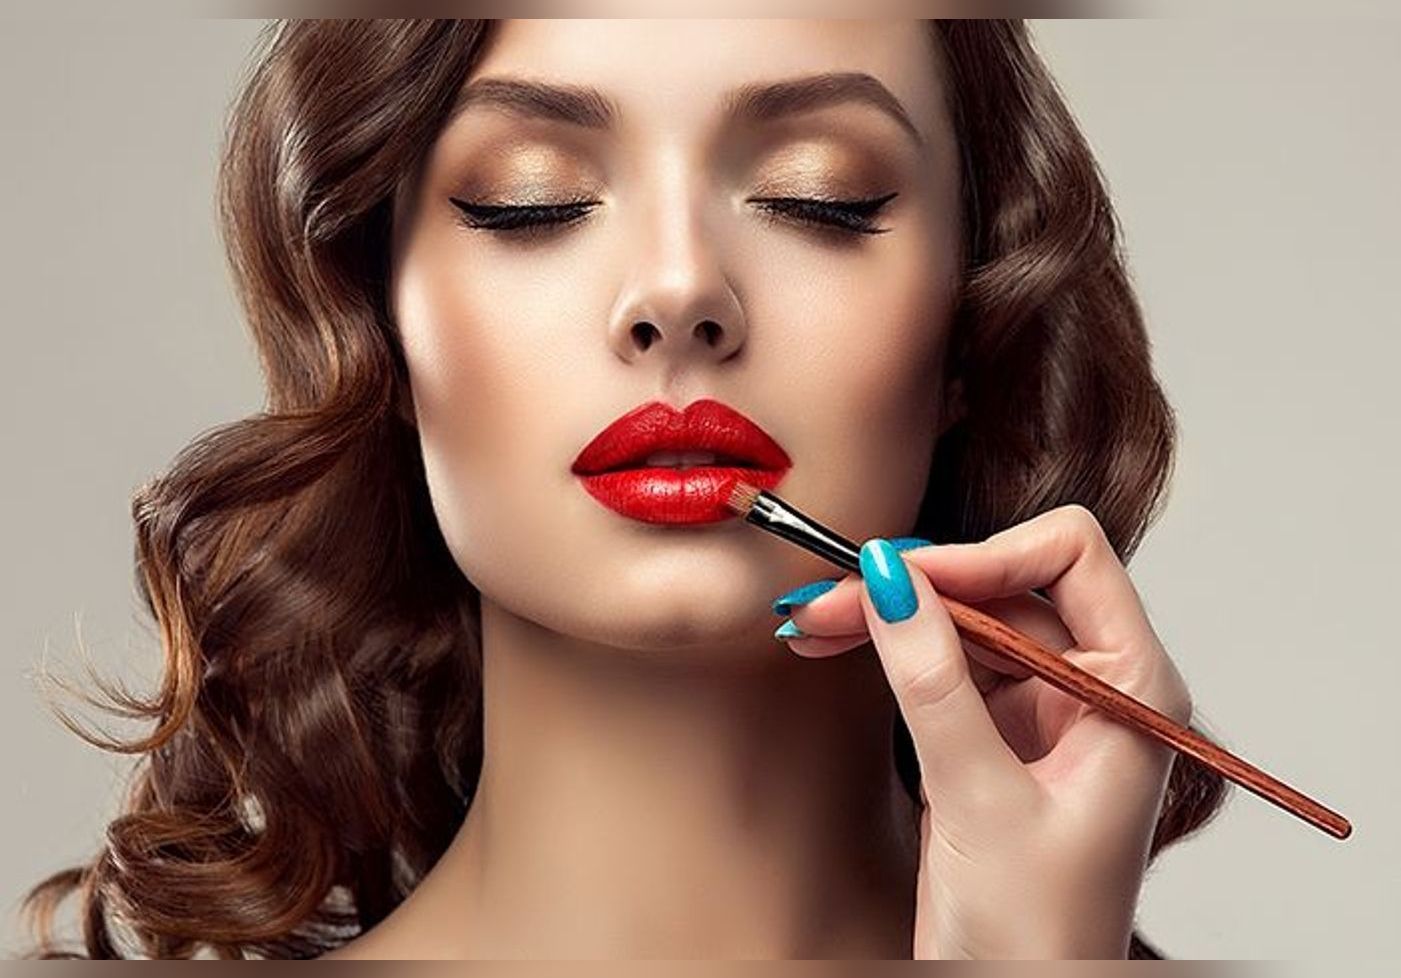 Vue sur TikTok, voici la méthode pour un maquillage des lèvres parfait